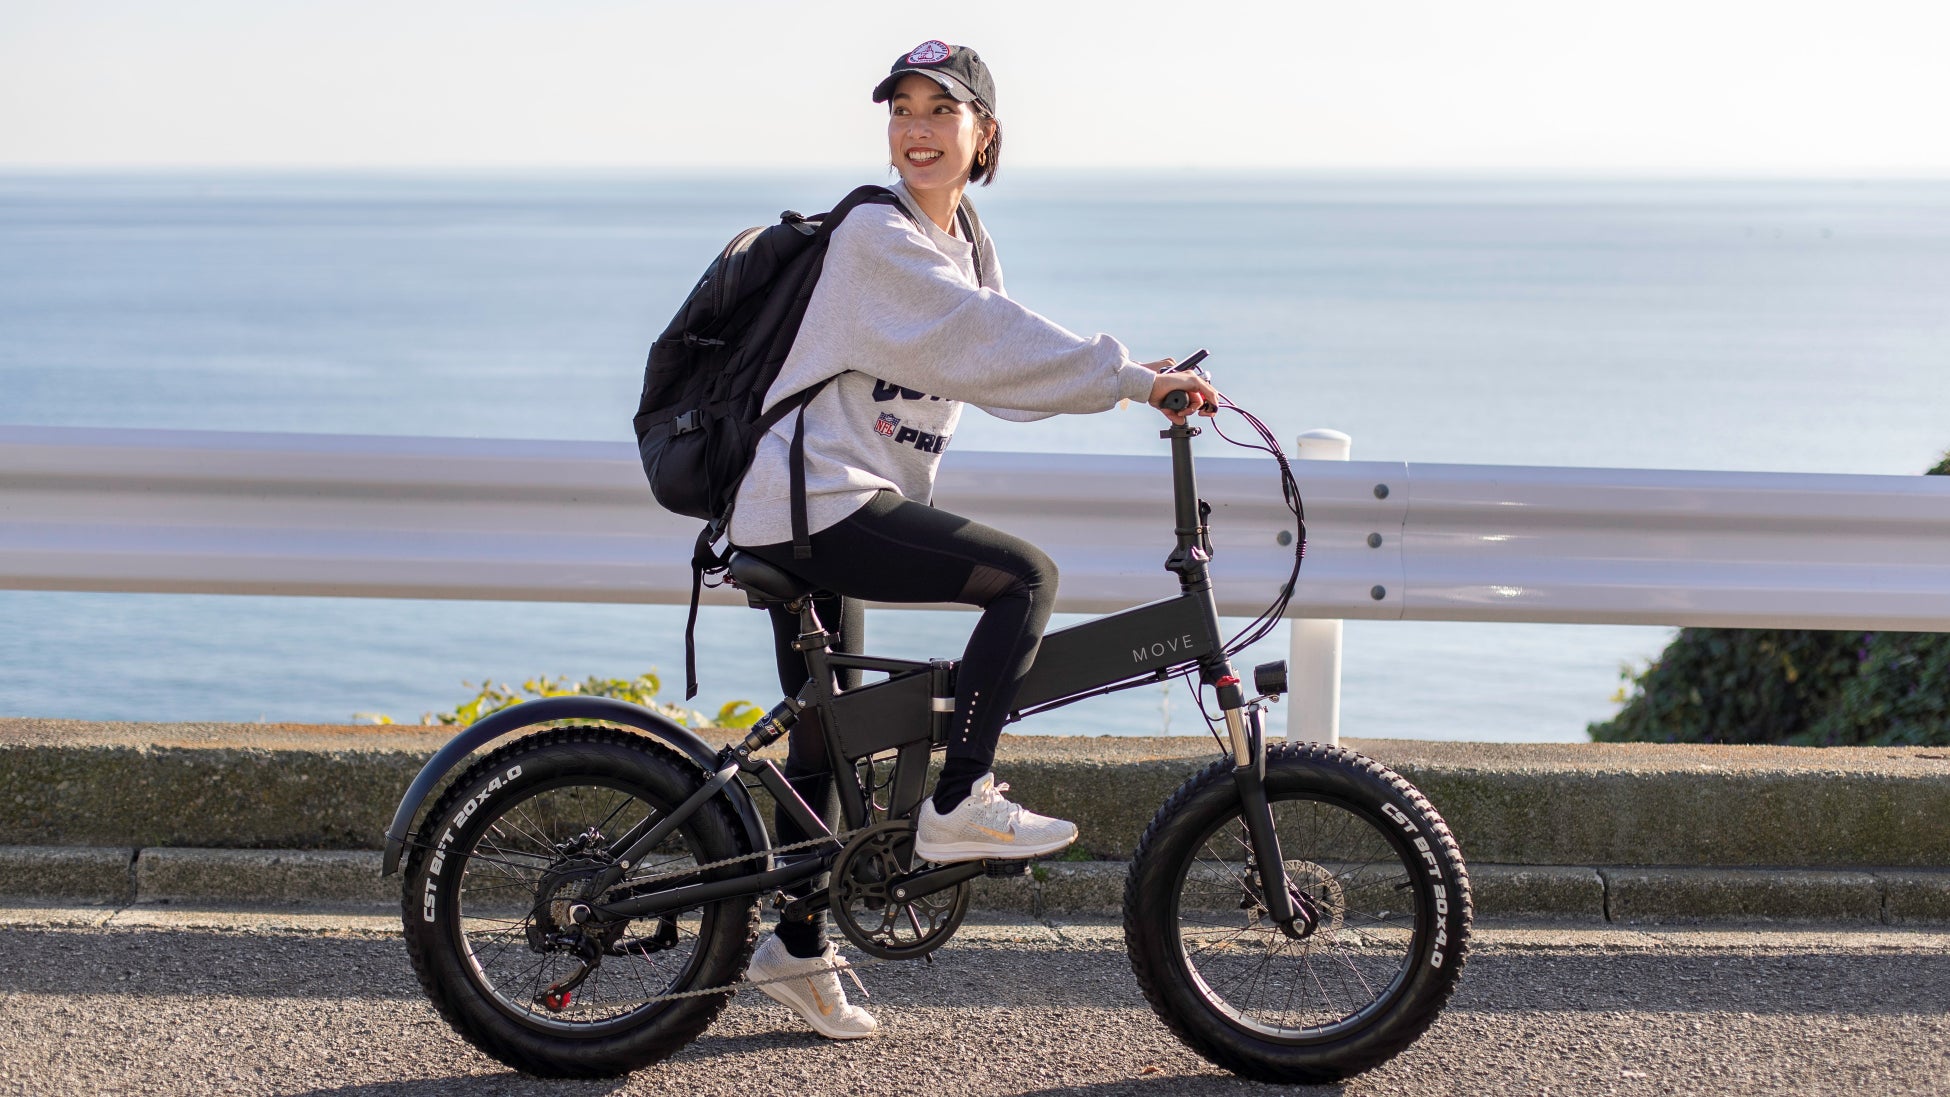 MOVE株式会社と®モビリティー社、E-Bikeを活用した富山市の観光振興と地域活性化を目指した新たな協業プロジェクトを発表。のサブ画像2